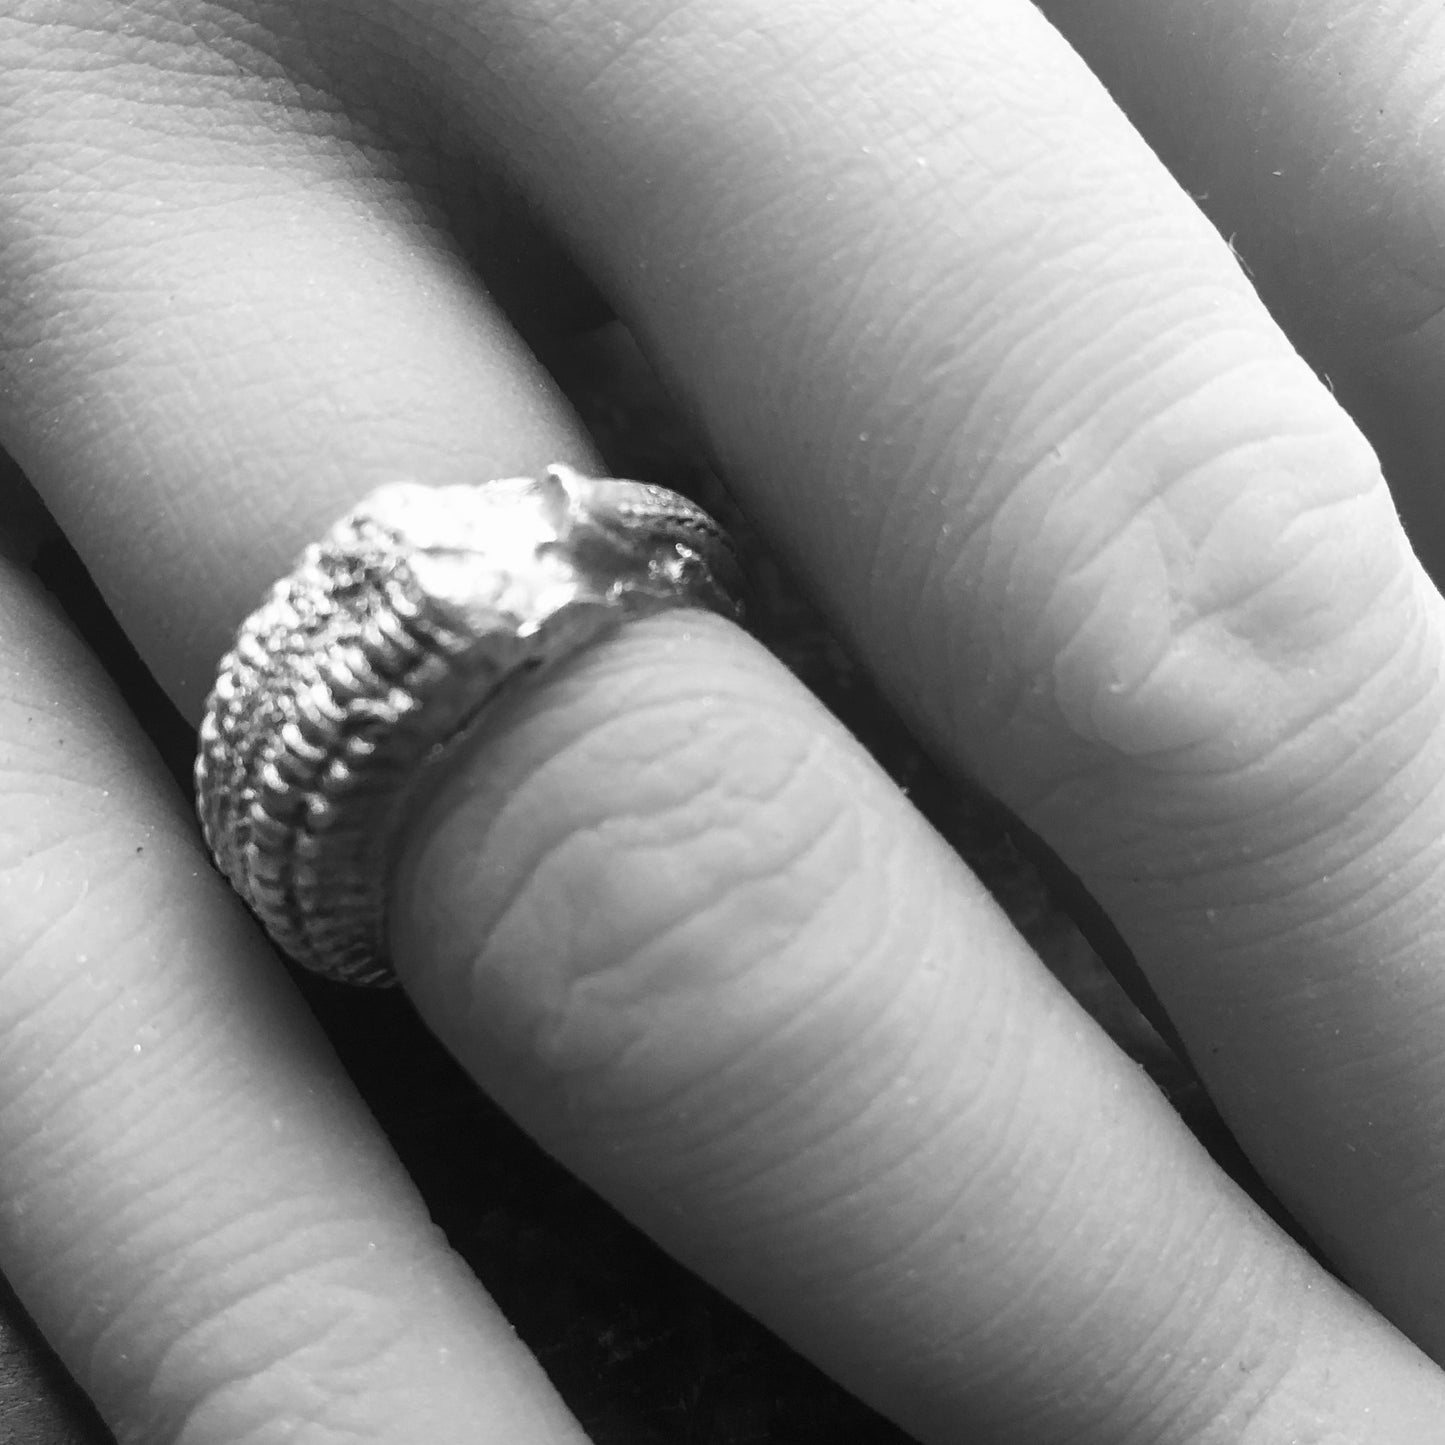 Organischer Ring aus Silber an einer Hand